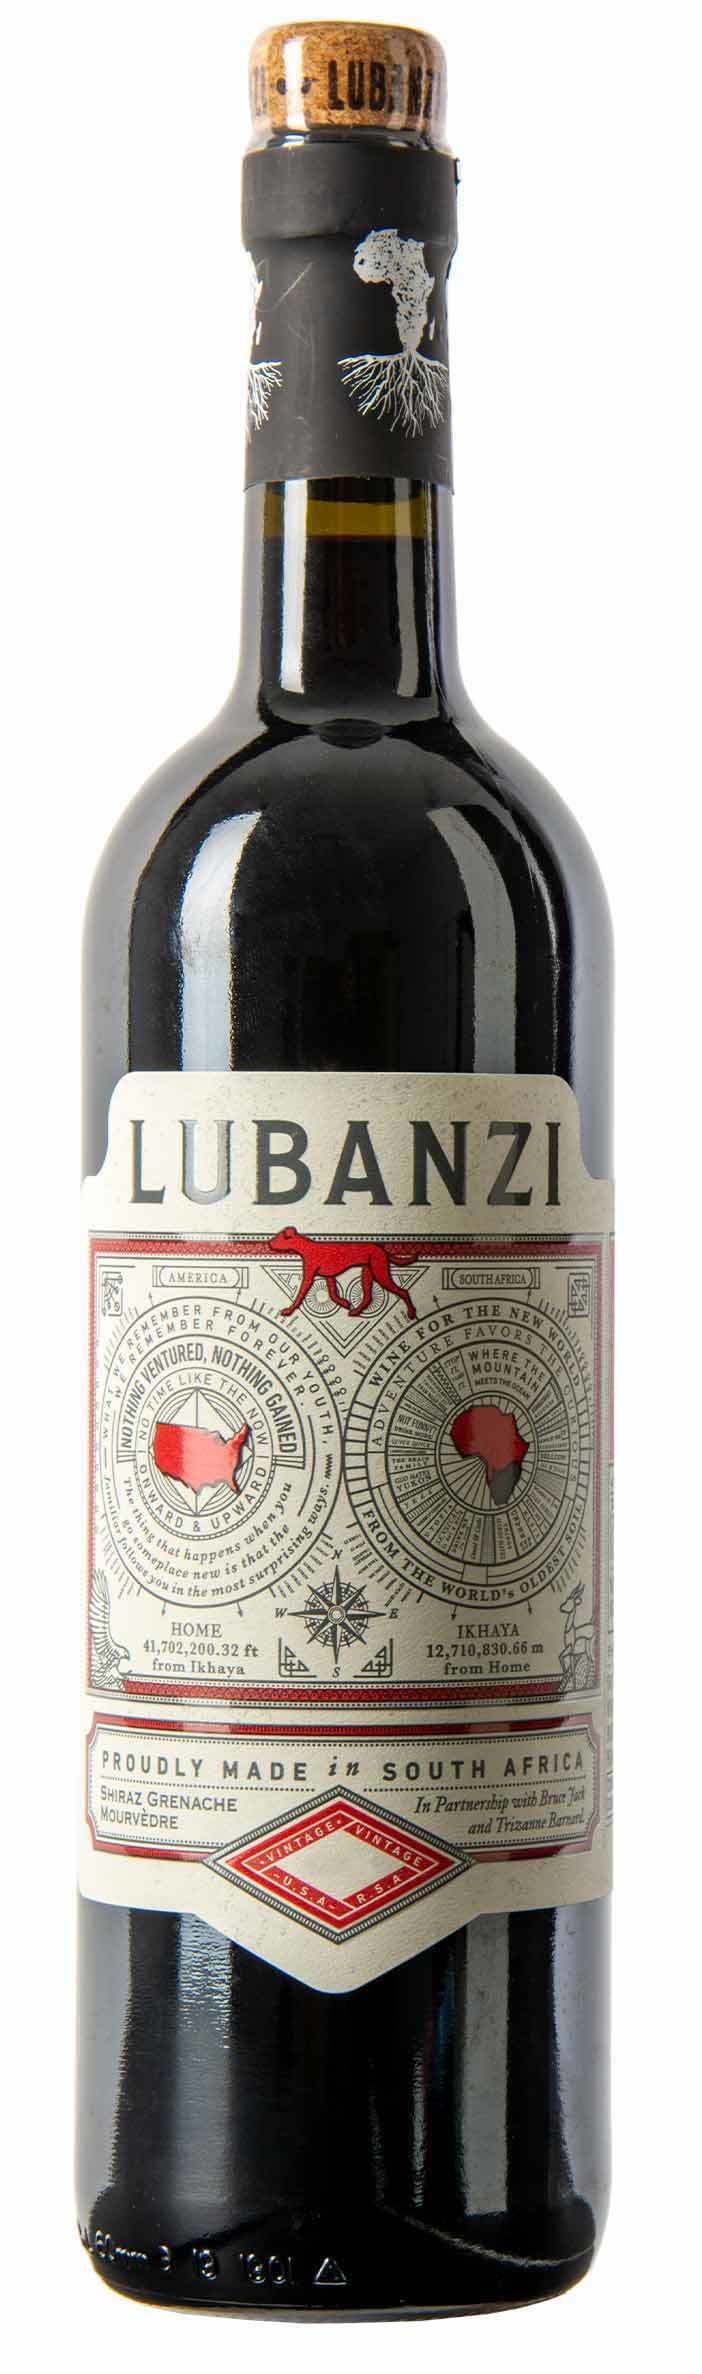 Lubanzi